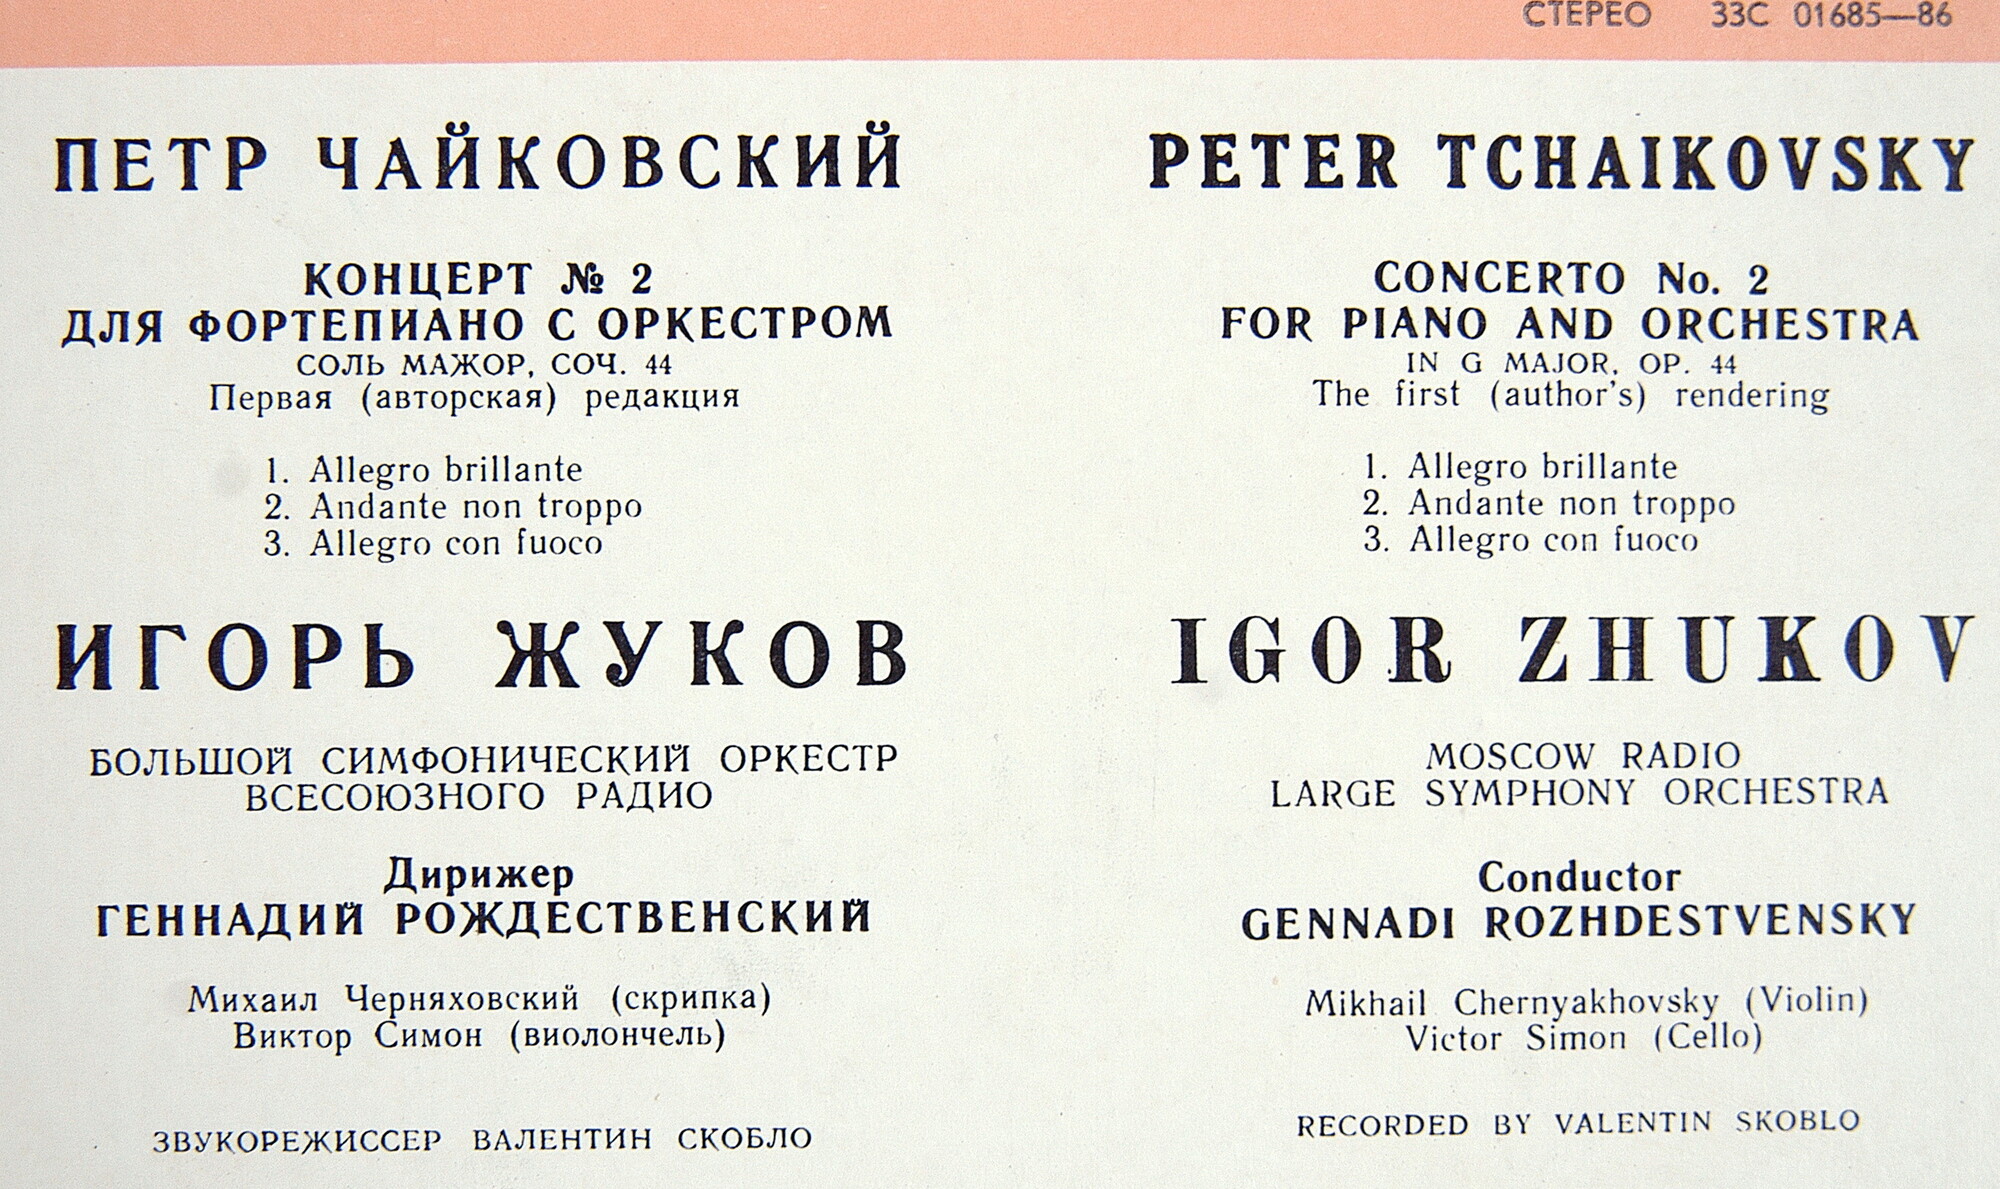 П. Чайковский: Концерт № 2 для ф-но с оркестром (Игорь Жуков)